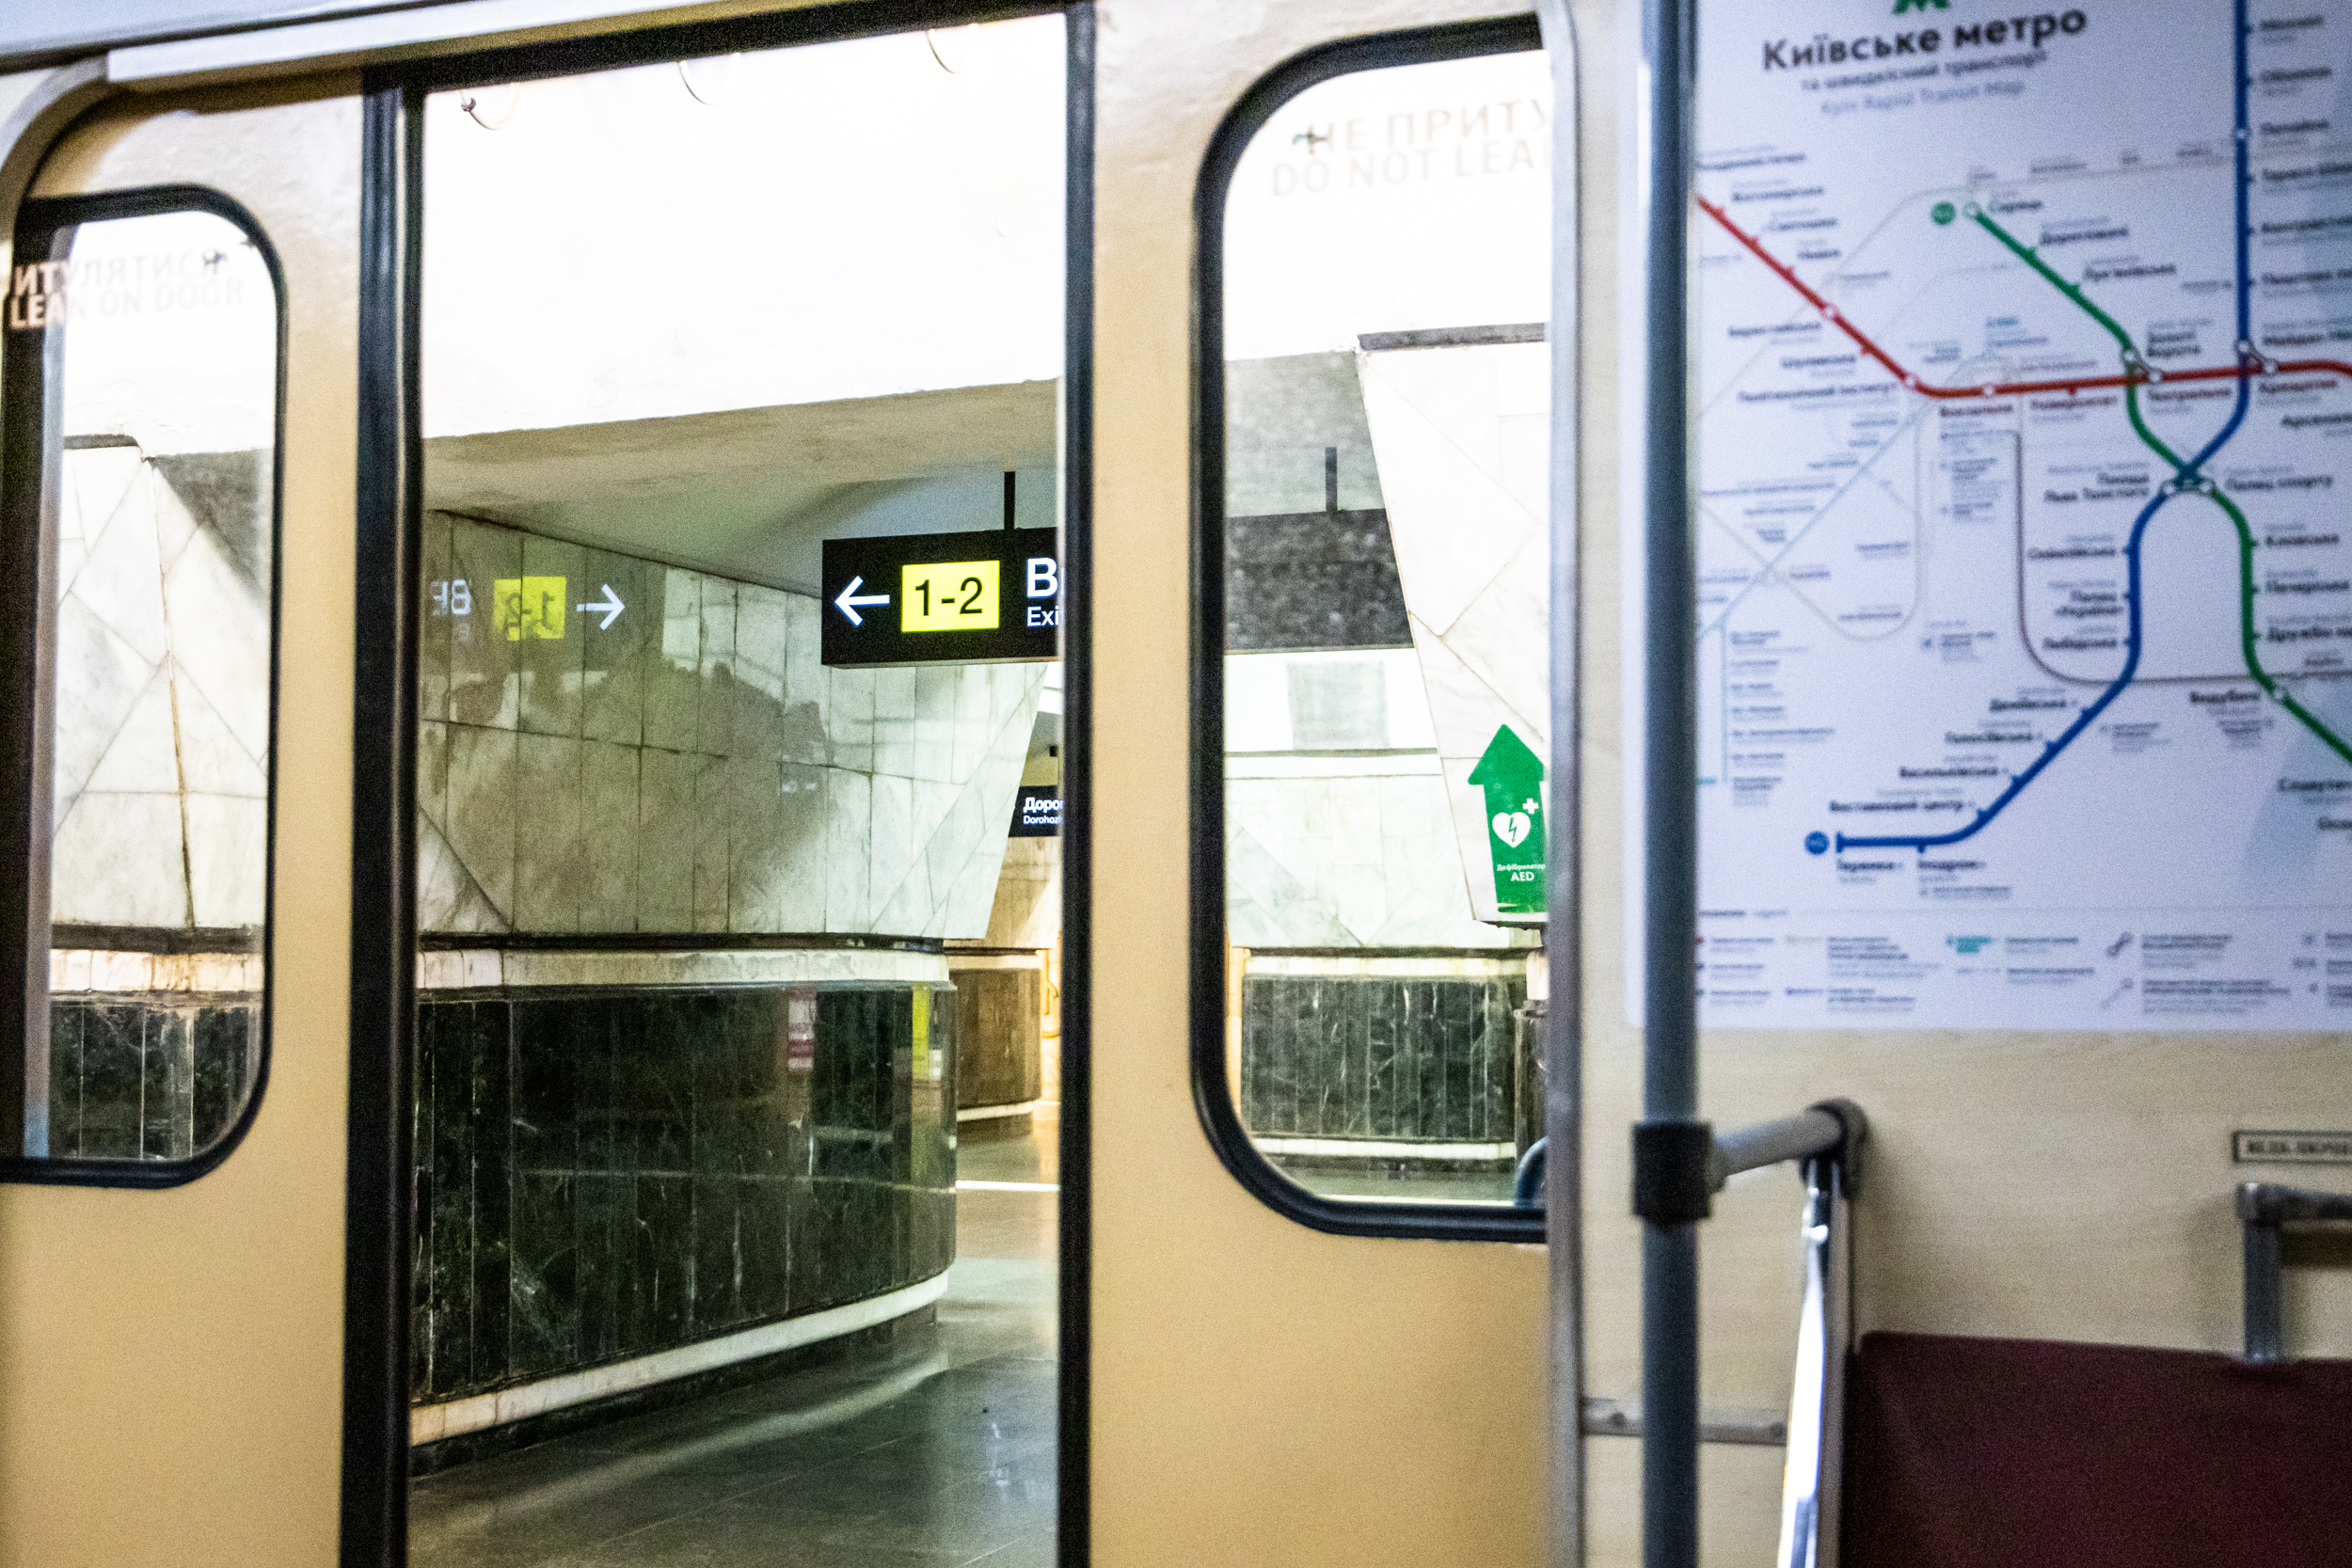 Відсьогодні пересадочний вузол столичного метро “Золоті ворота” – “Театральна” запрацював у звичайному режимі